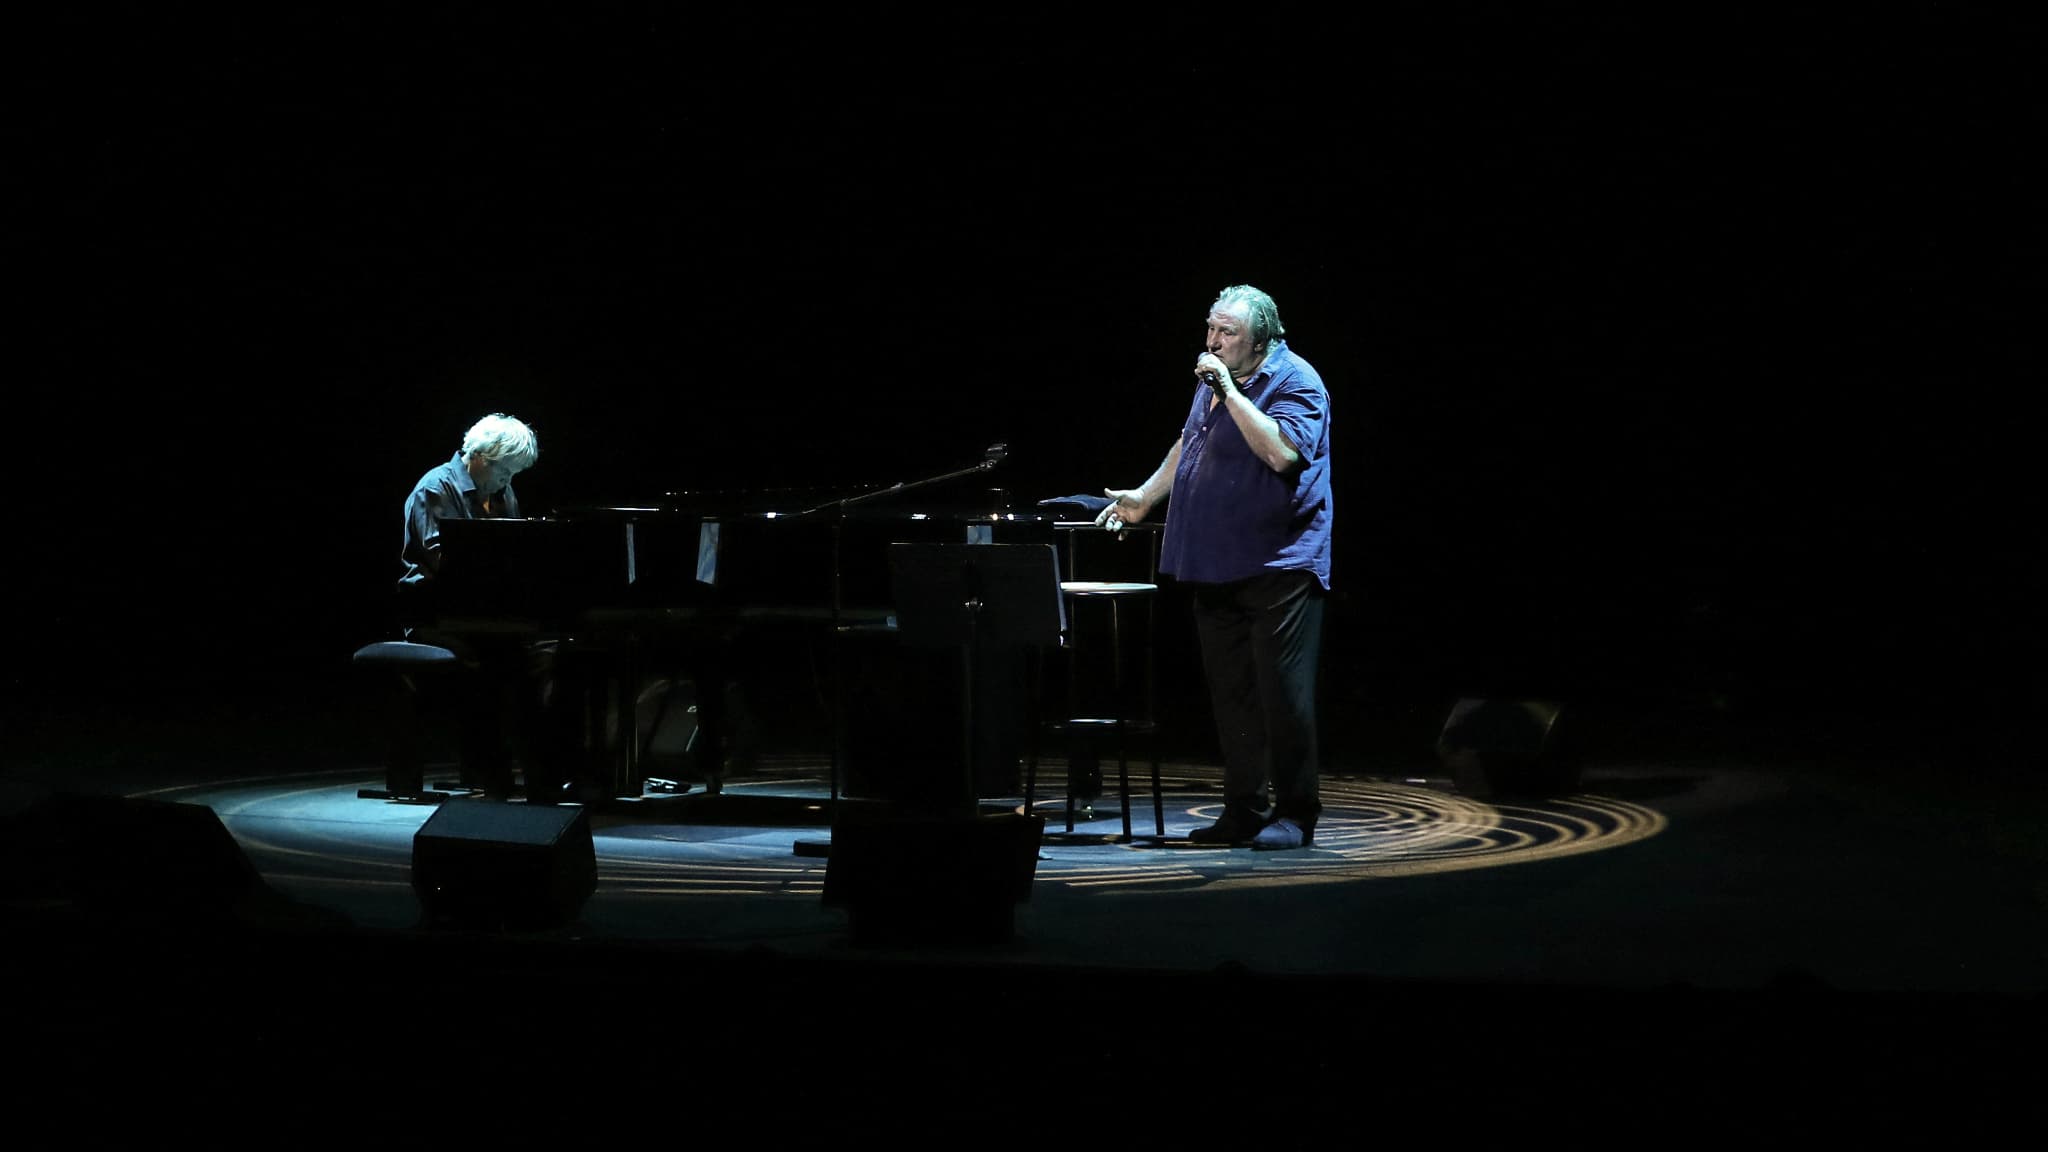 Depardieu, in vol concert, past de tekst van “Göttingen” aan om “Mariupol’s kinderen” op te roepen